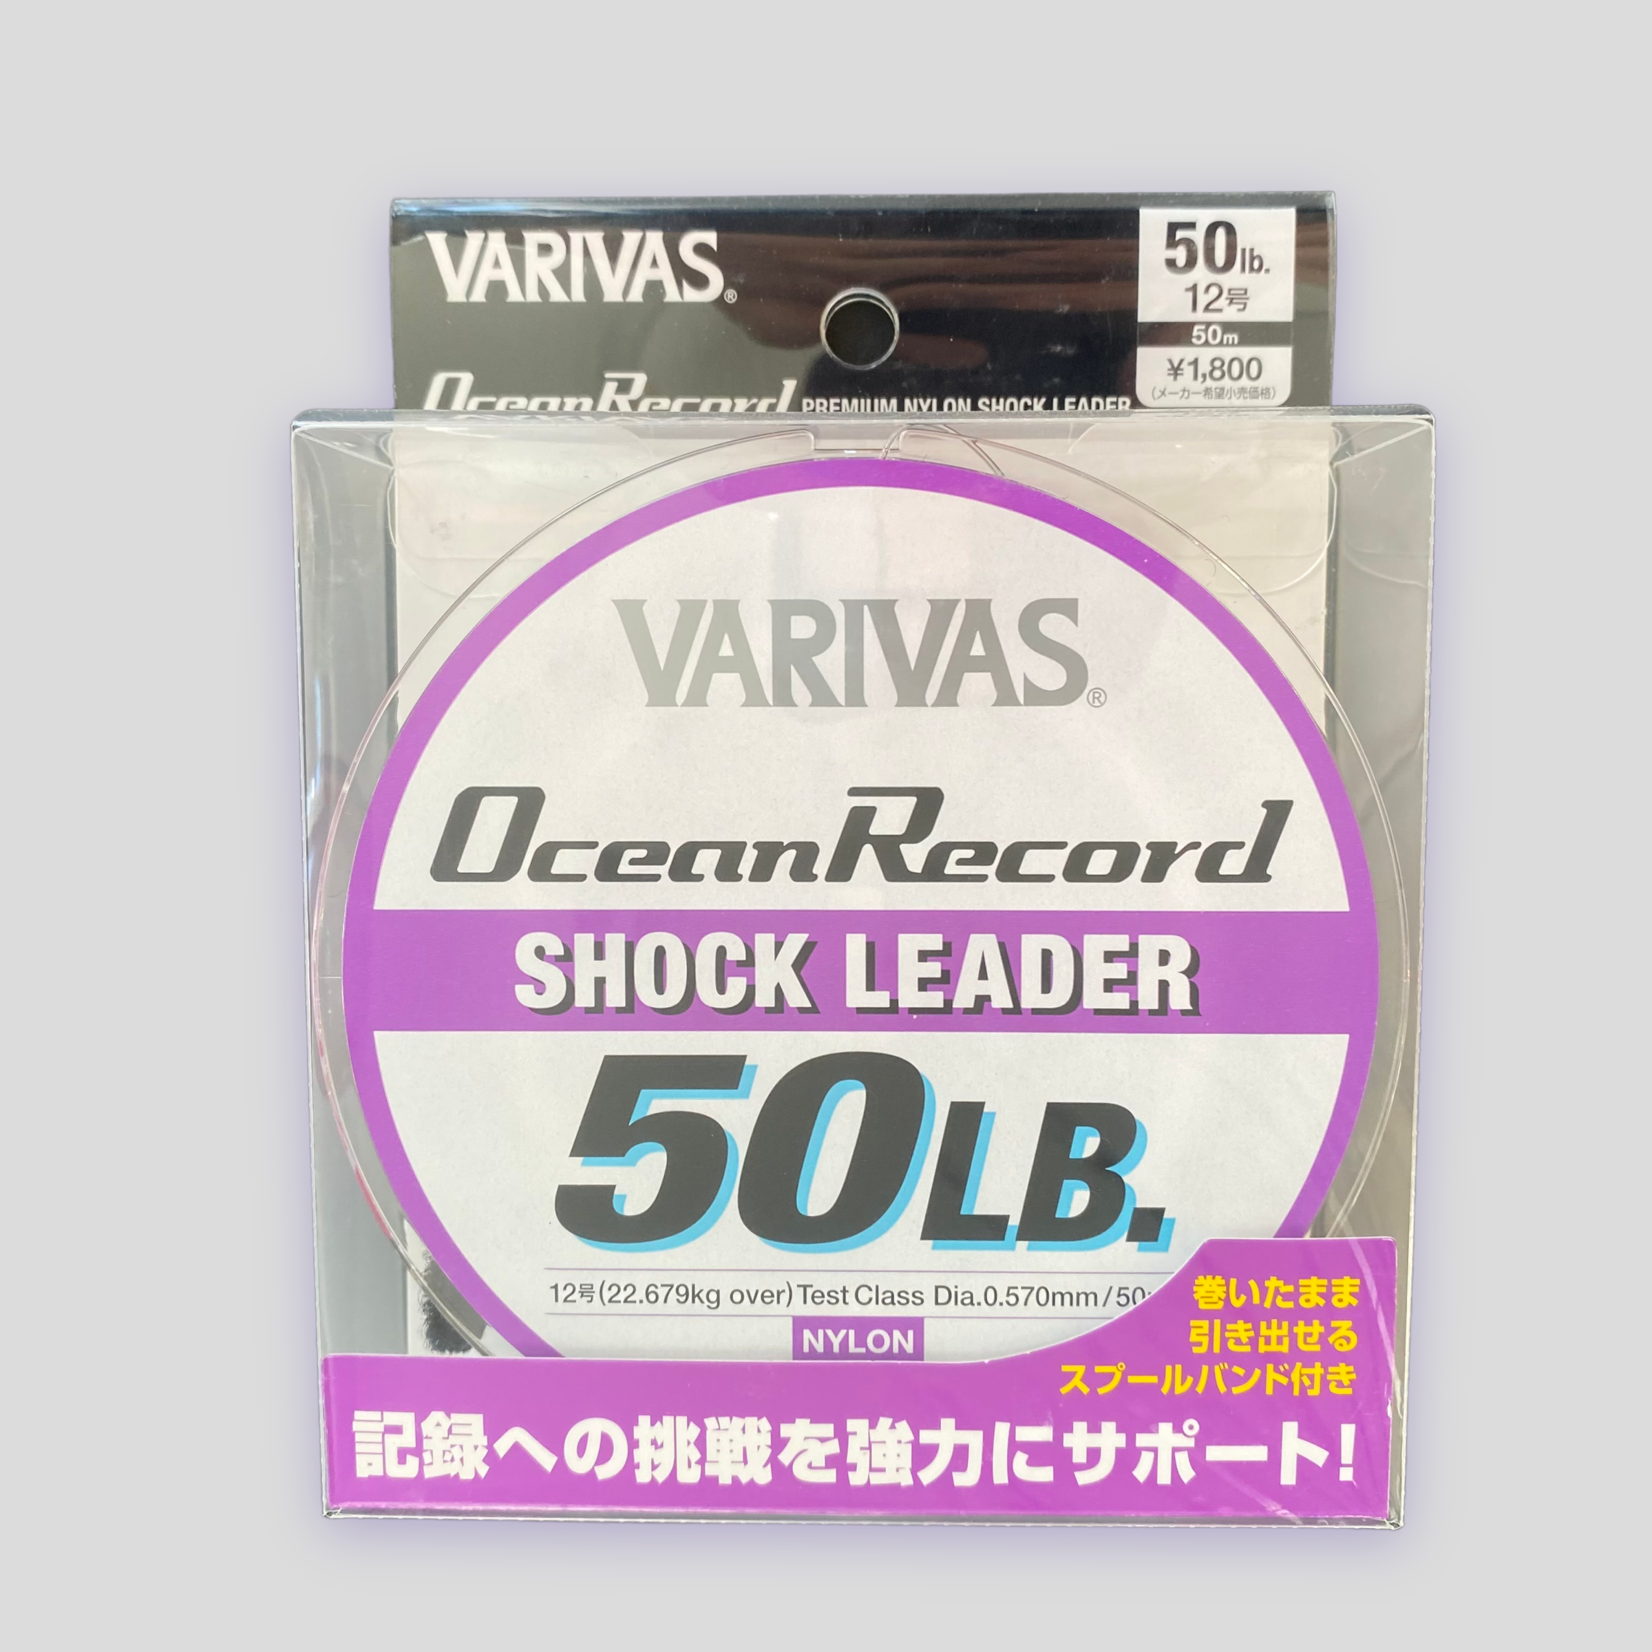 Varivas Varivas Ocean Record Shock Leader